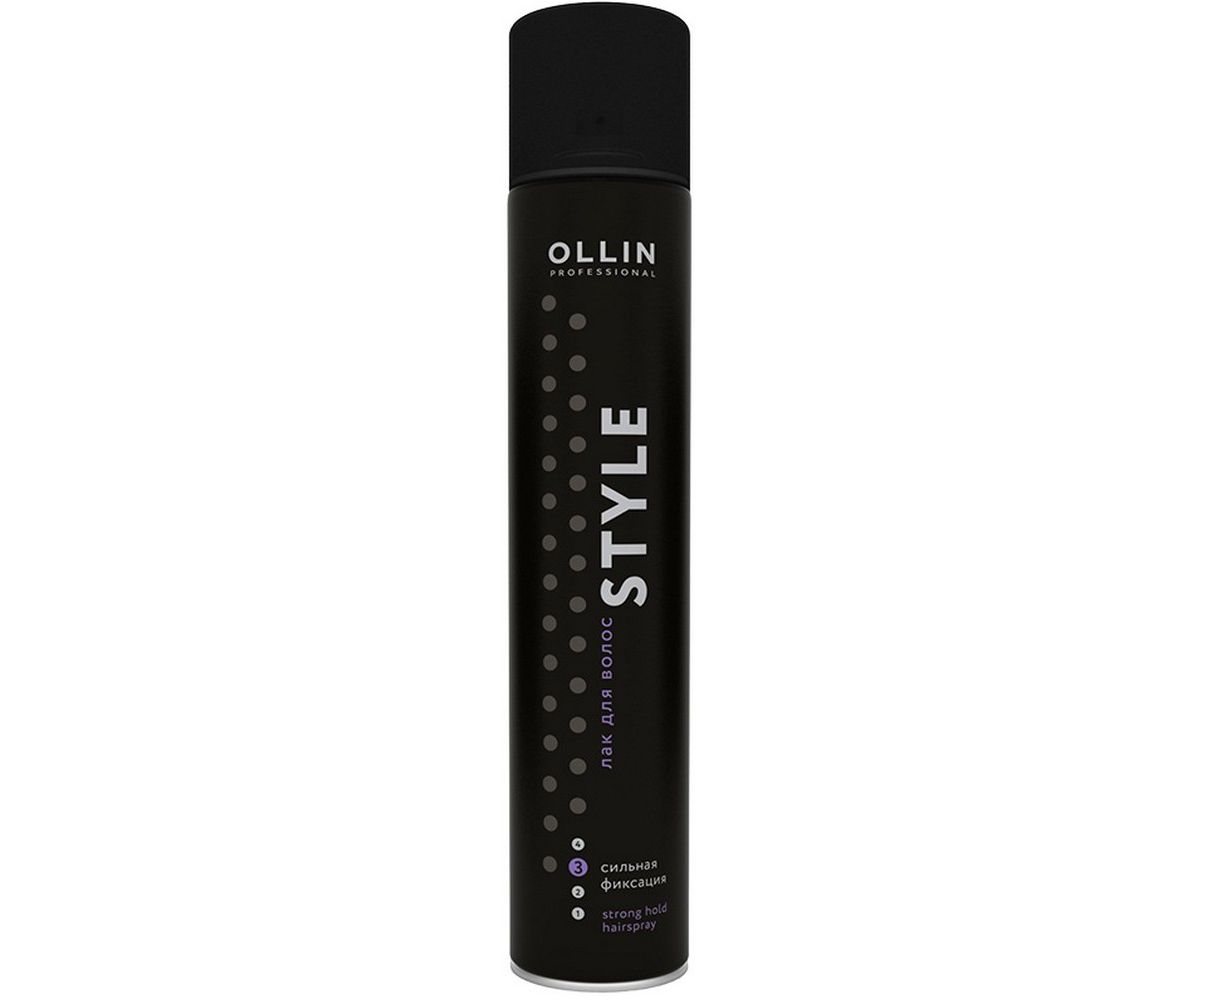 Черный лак для волос. Ollin Style лак для волос сильной фиксации 500мл. Лак для волос ультрасильной фиксации Ollin professional Style 50 мл. Лак ультра сильной фиксации Оллин. Ollin, лак Style, 500 мл.